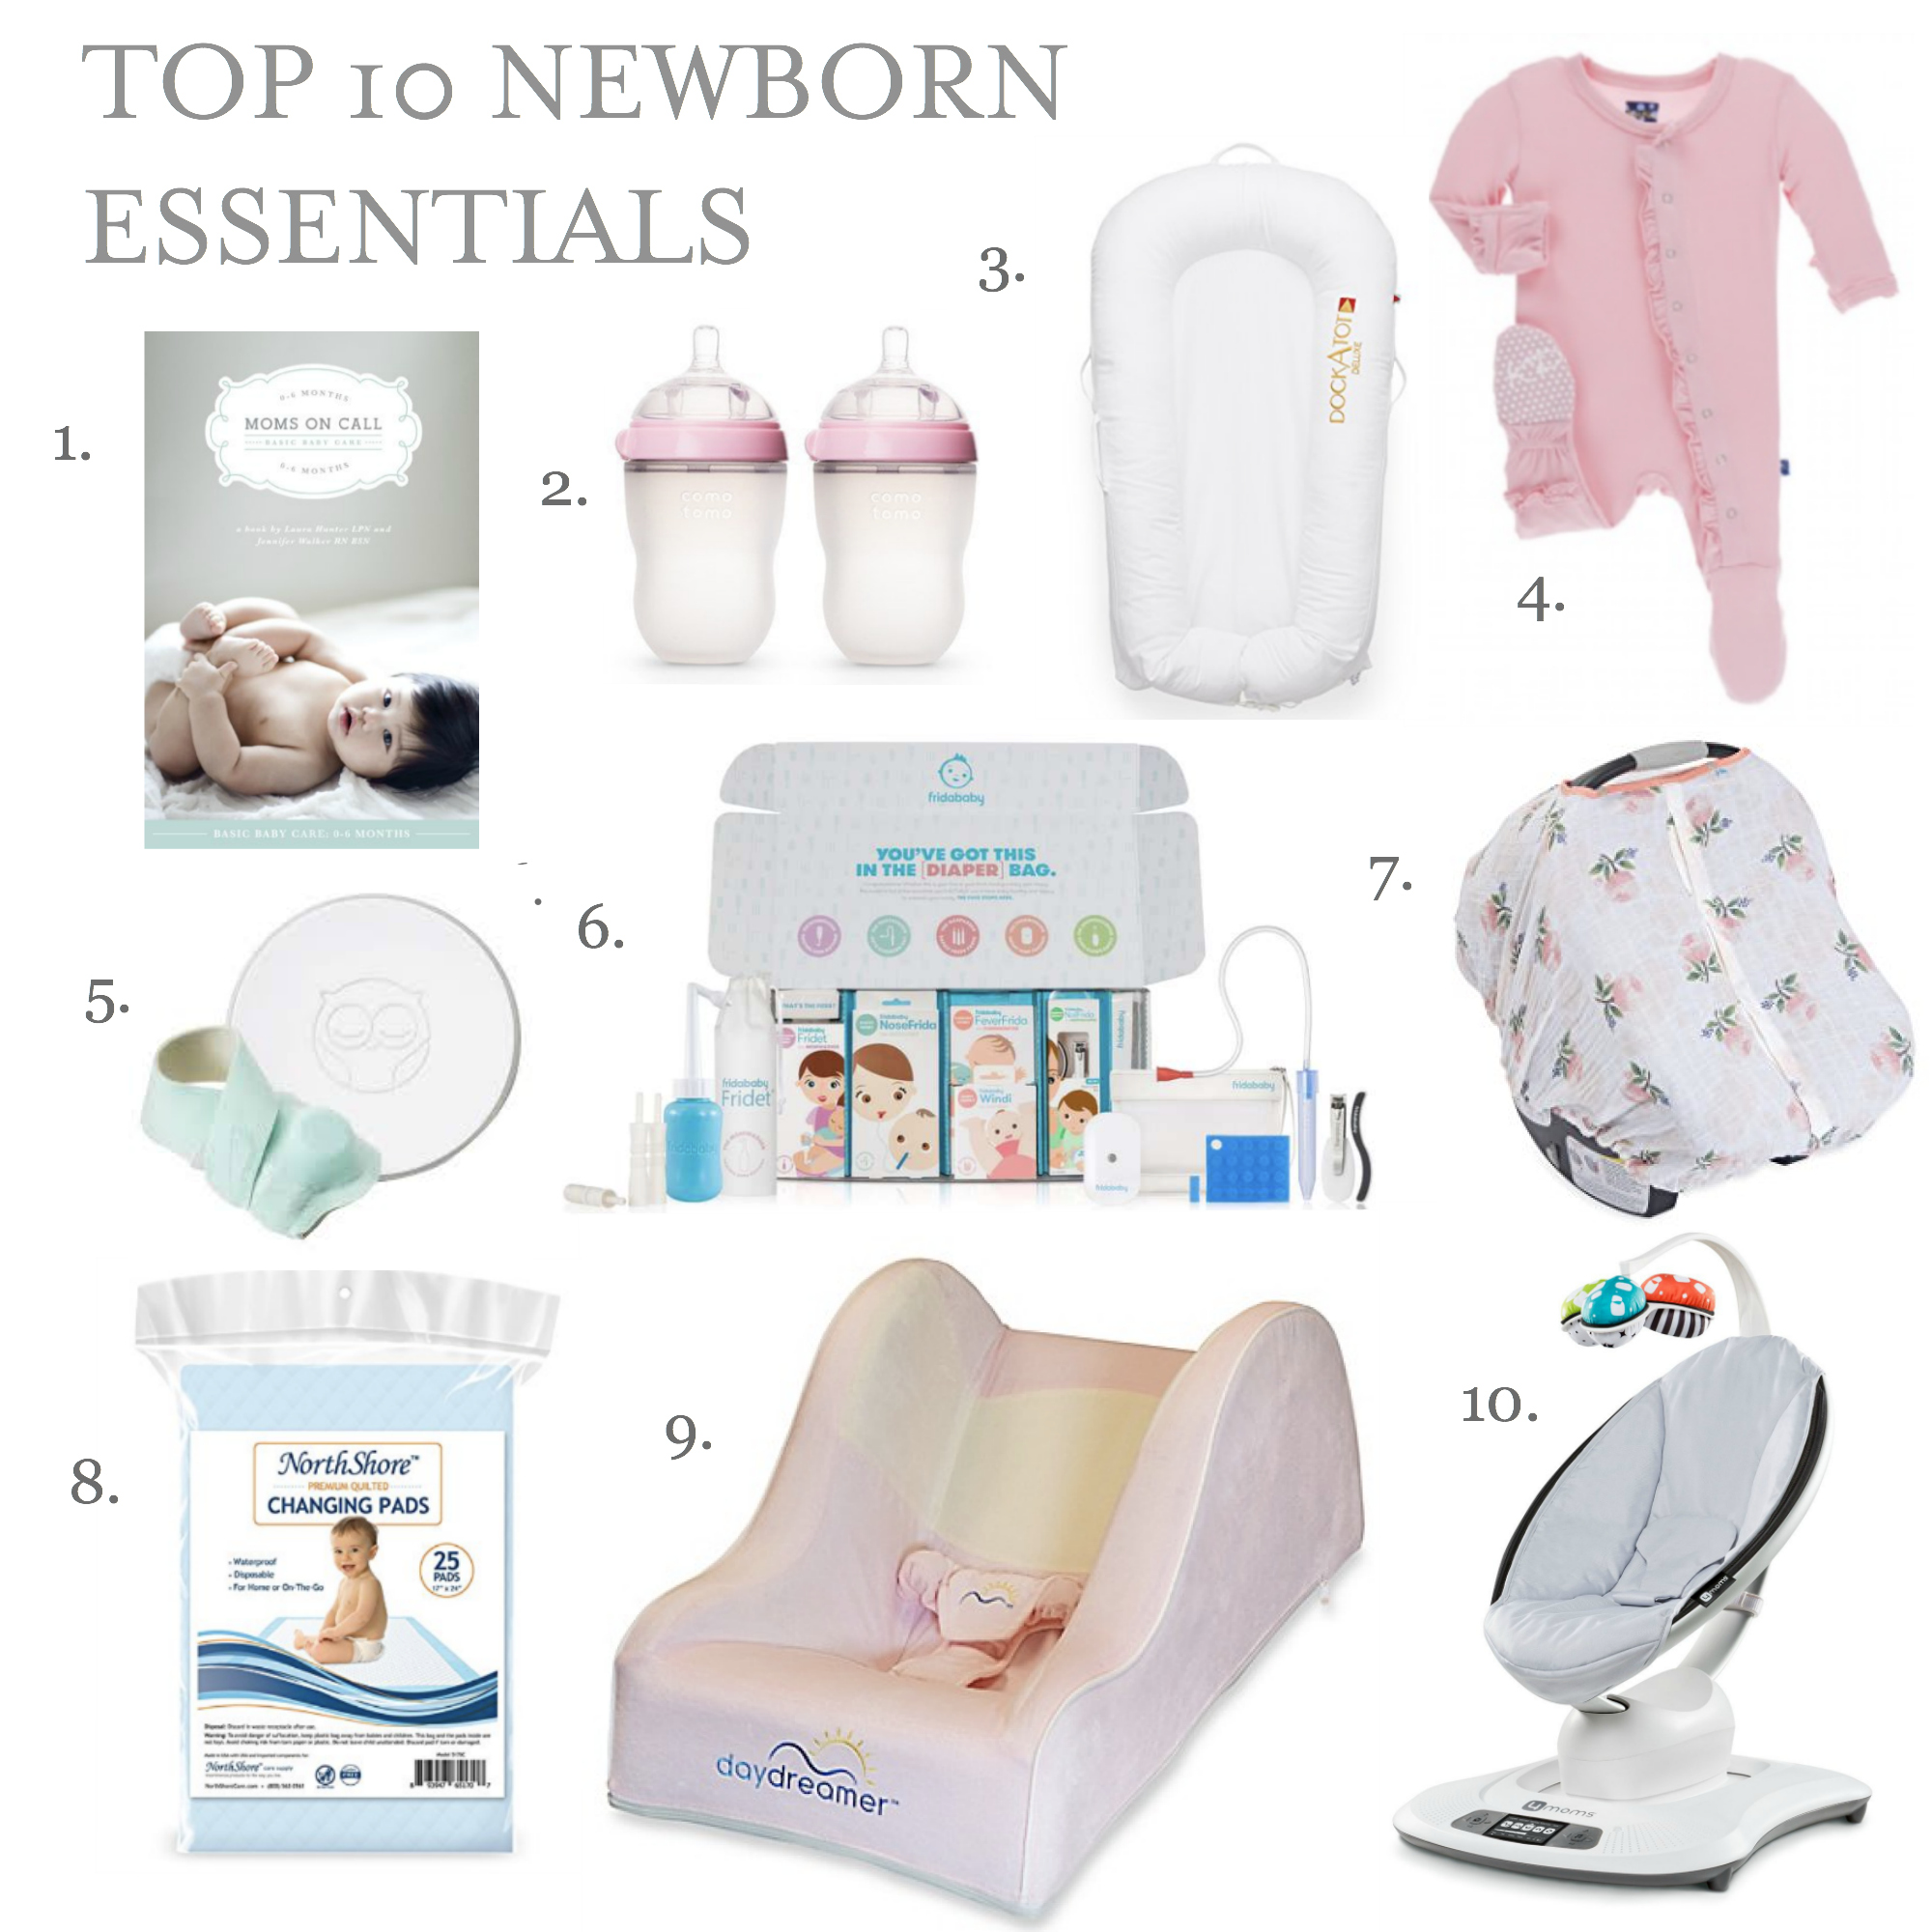 Top 10 Newborn Essentials + Some Other 